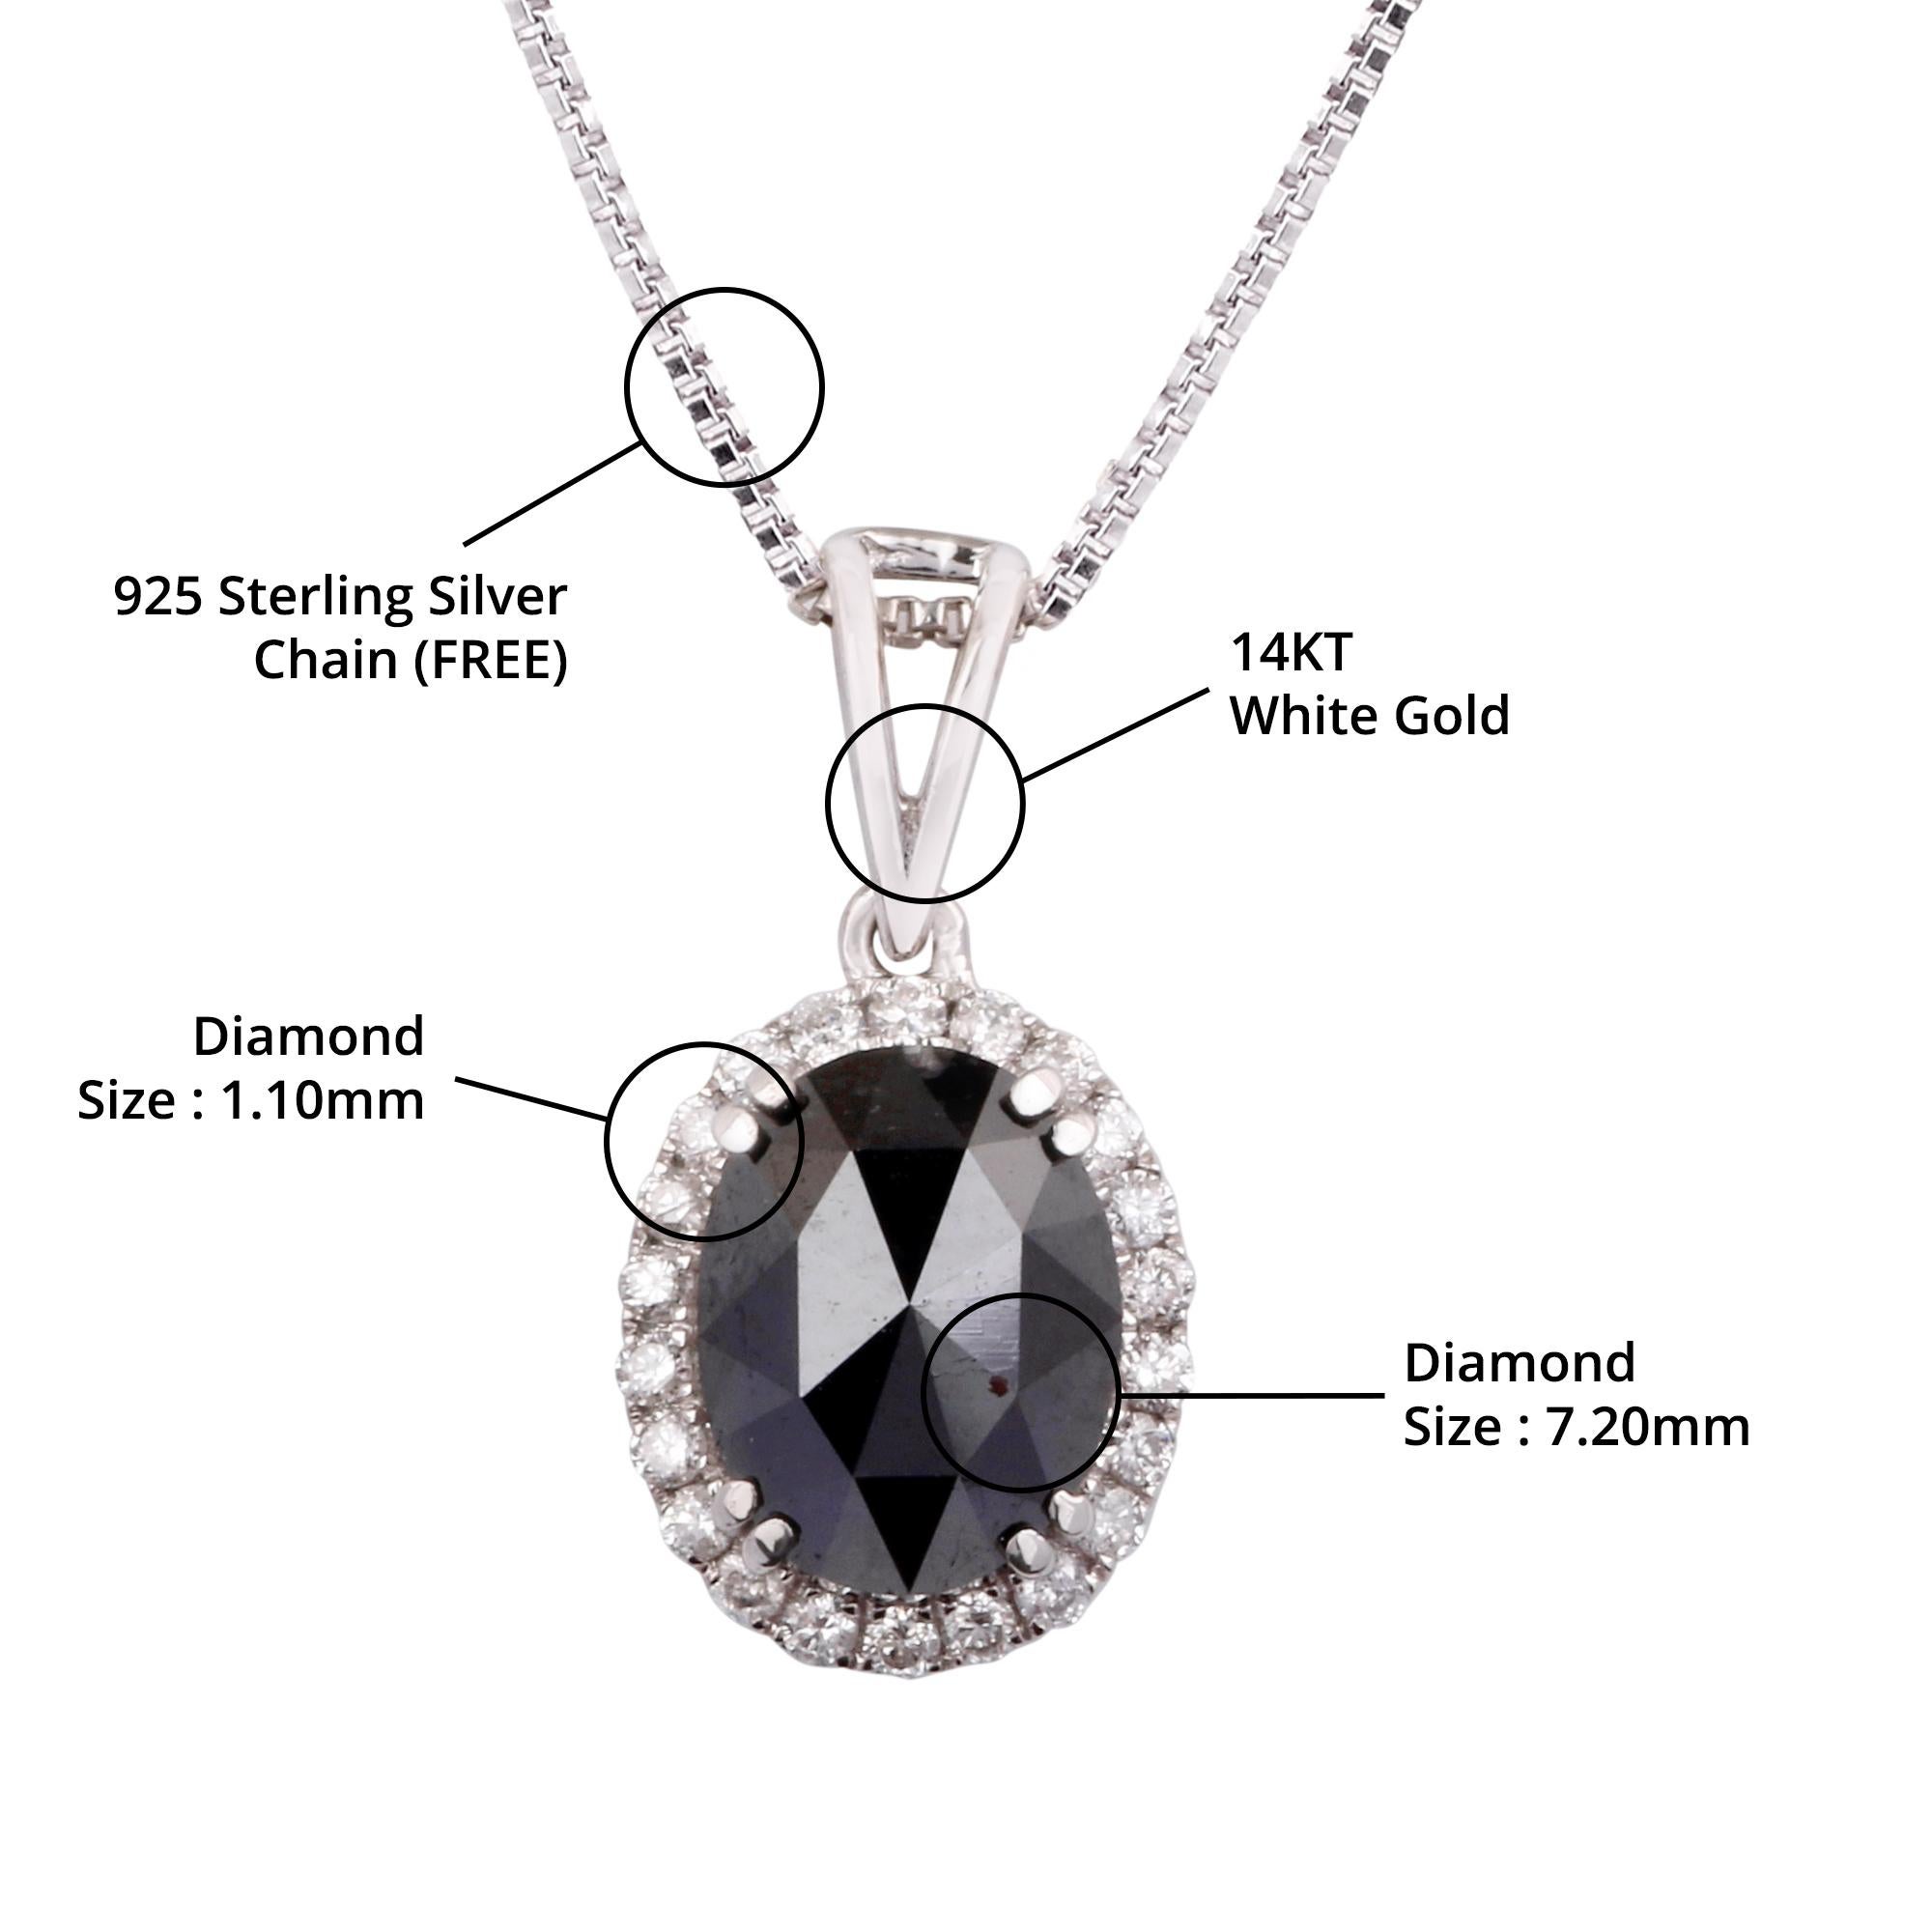 Détails de l'article:-

✦ SKU:- JPD00165WWW

✦ Matériau :- Or

✦ Pureté du métal : or blanc 14K

✦ Gemstone Specification:- 
✧ Diamant rond transparent (l1/H1) - 1.10mm - 22 pièces
✧ Véritable Diamant Noir - 7.20 mm - 1 Pc


✦ Approx. Poids en carat